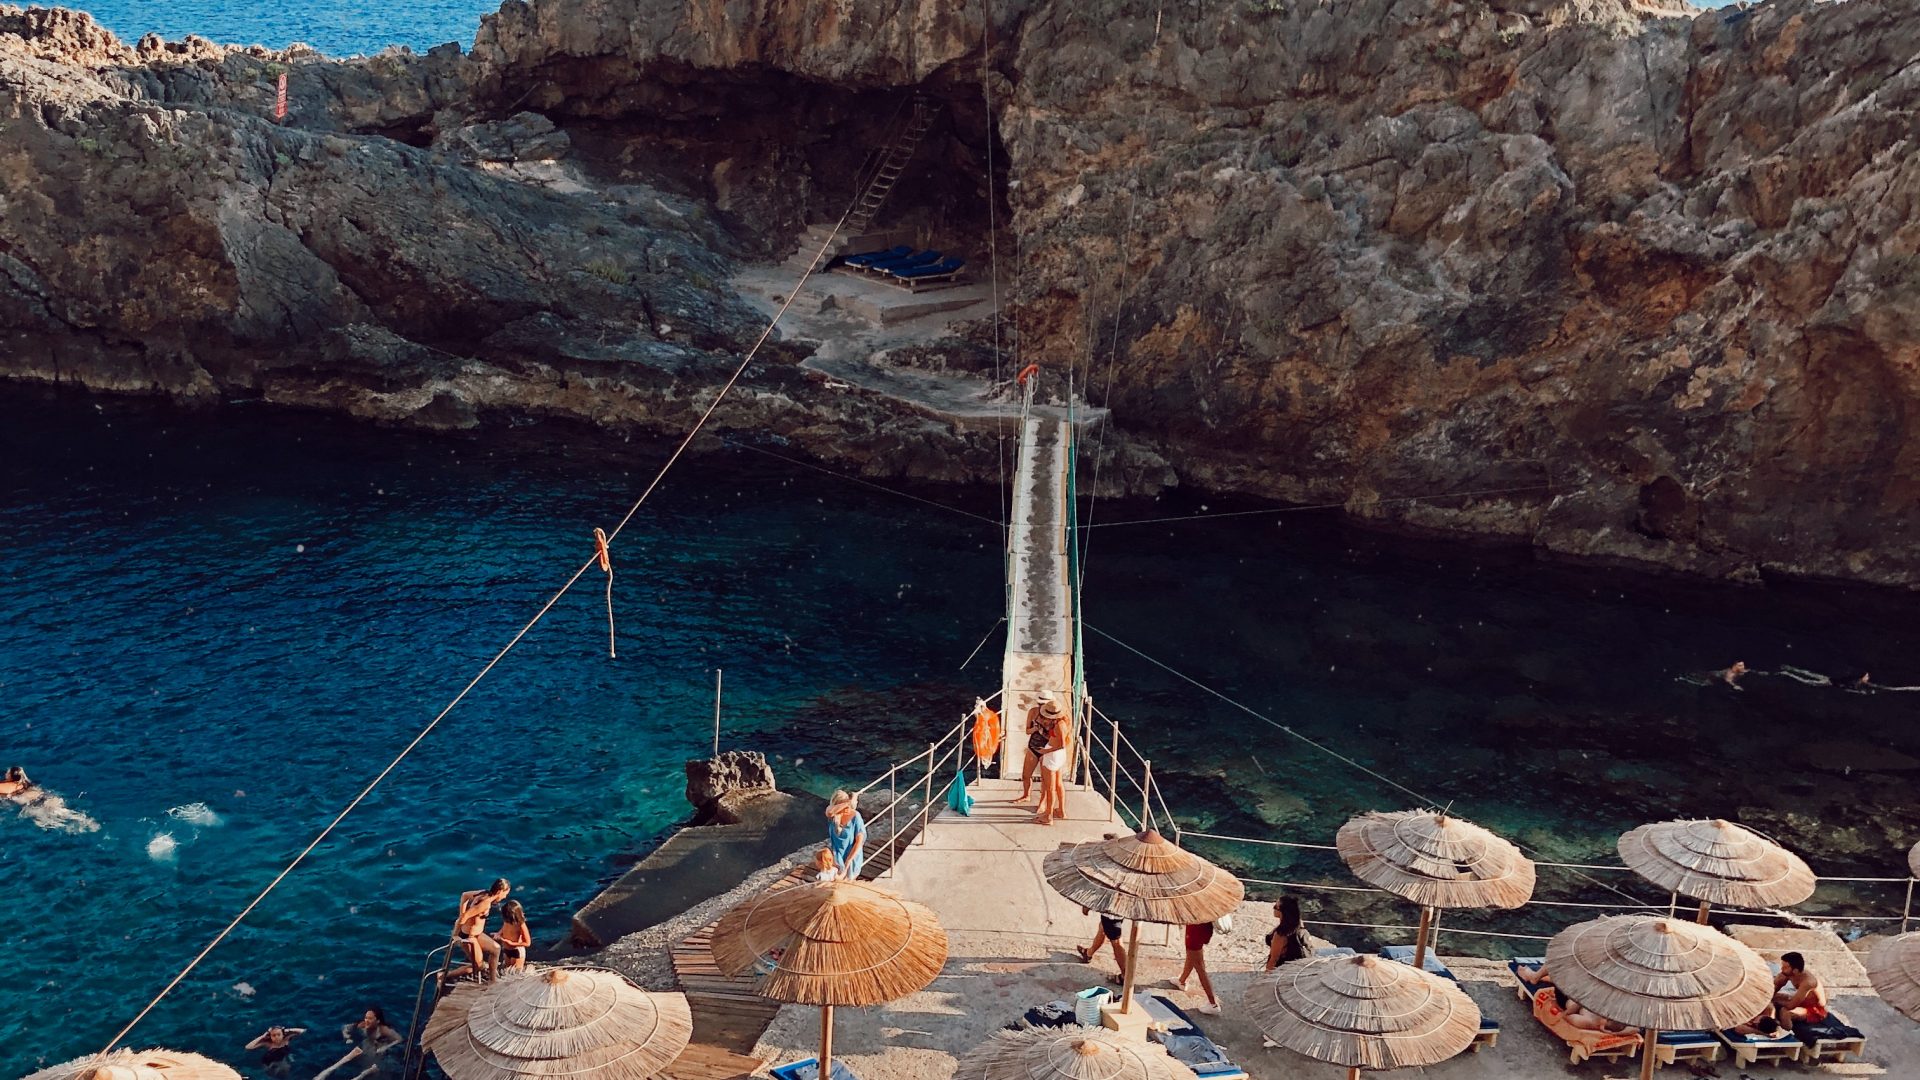 Crete in the top 20 destinations for April 2020